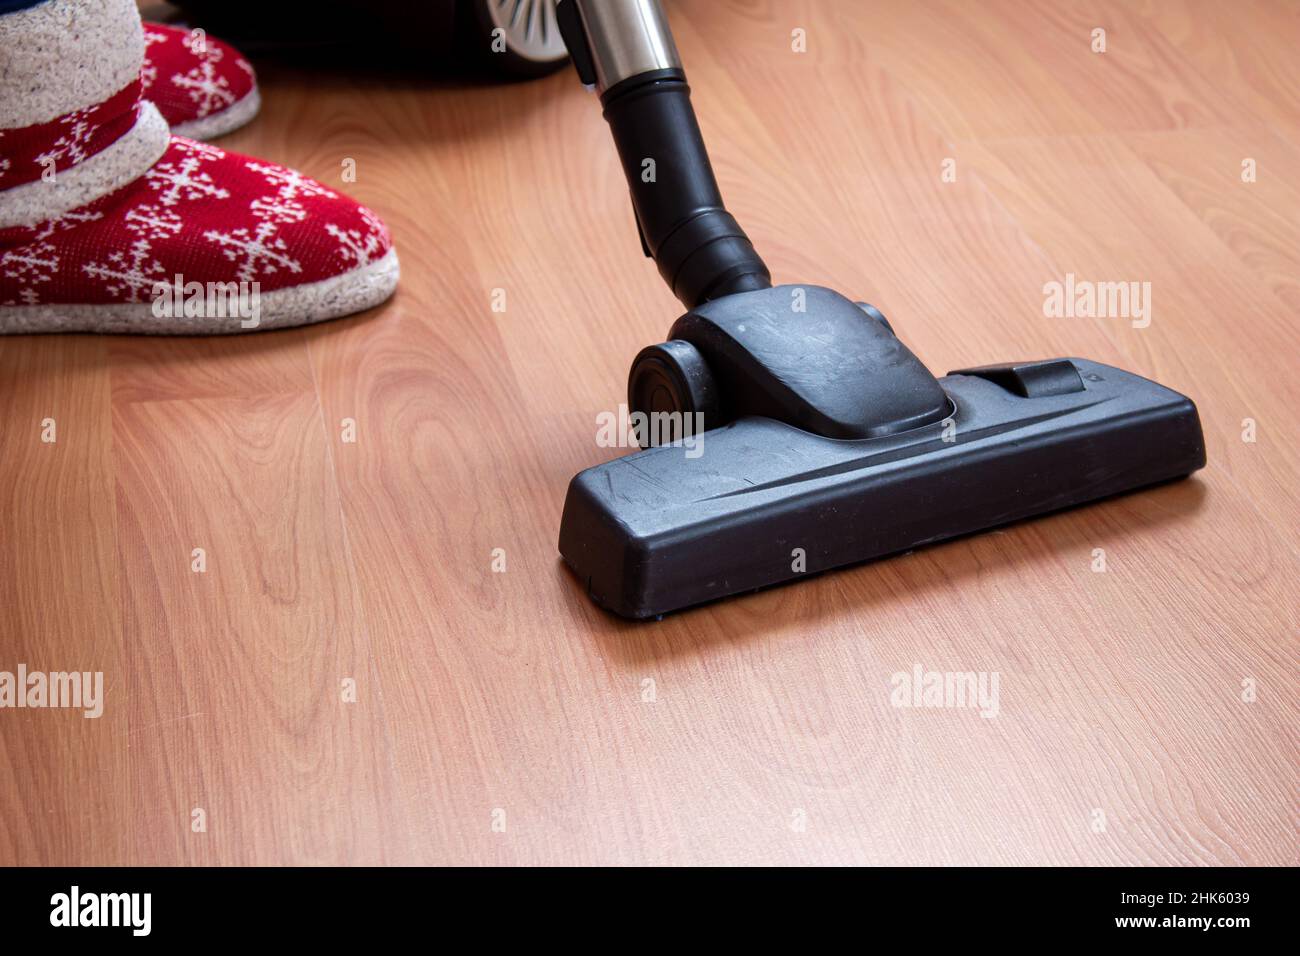 Donna che usa un aspirapolvere per pulire il pavimento in parquet